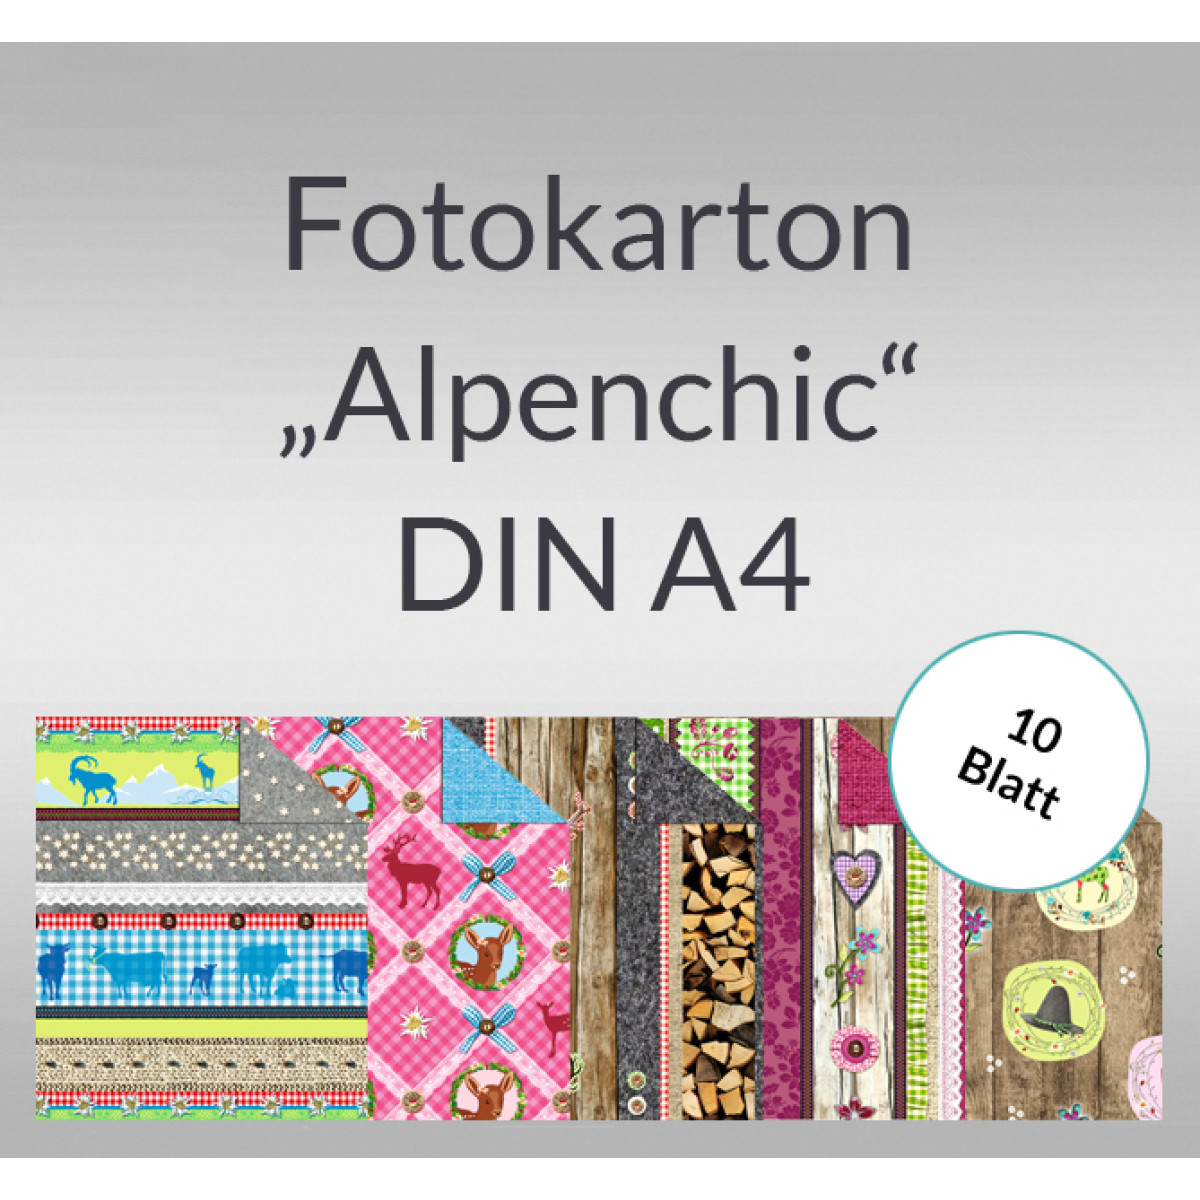 Fotokarton "Alpenchic" DIN A4 - 10 Blatt